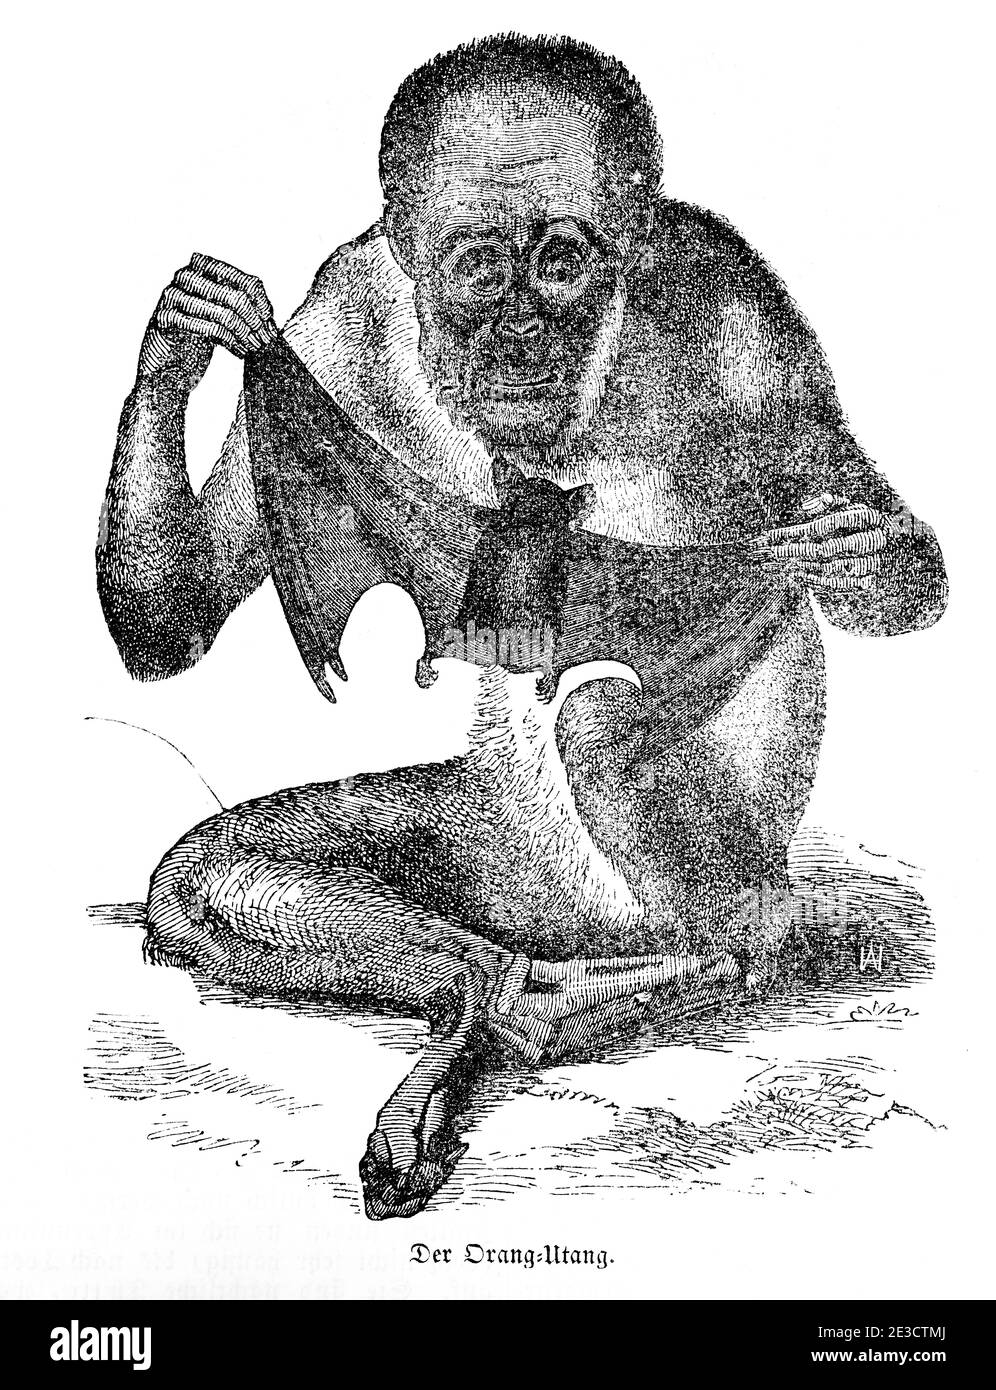 Portrait d'un orang-utan de site, calendrier suisse avec des histoires sur des animaux étrangers et des motifs correspondants, Saint-Gall Suisse 1853 Banque D'Images